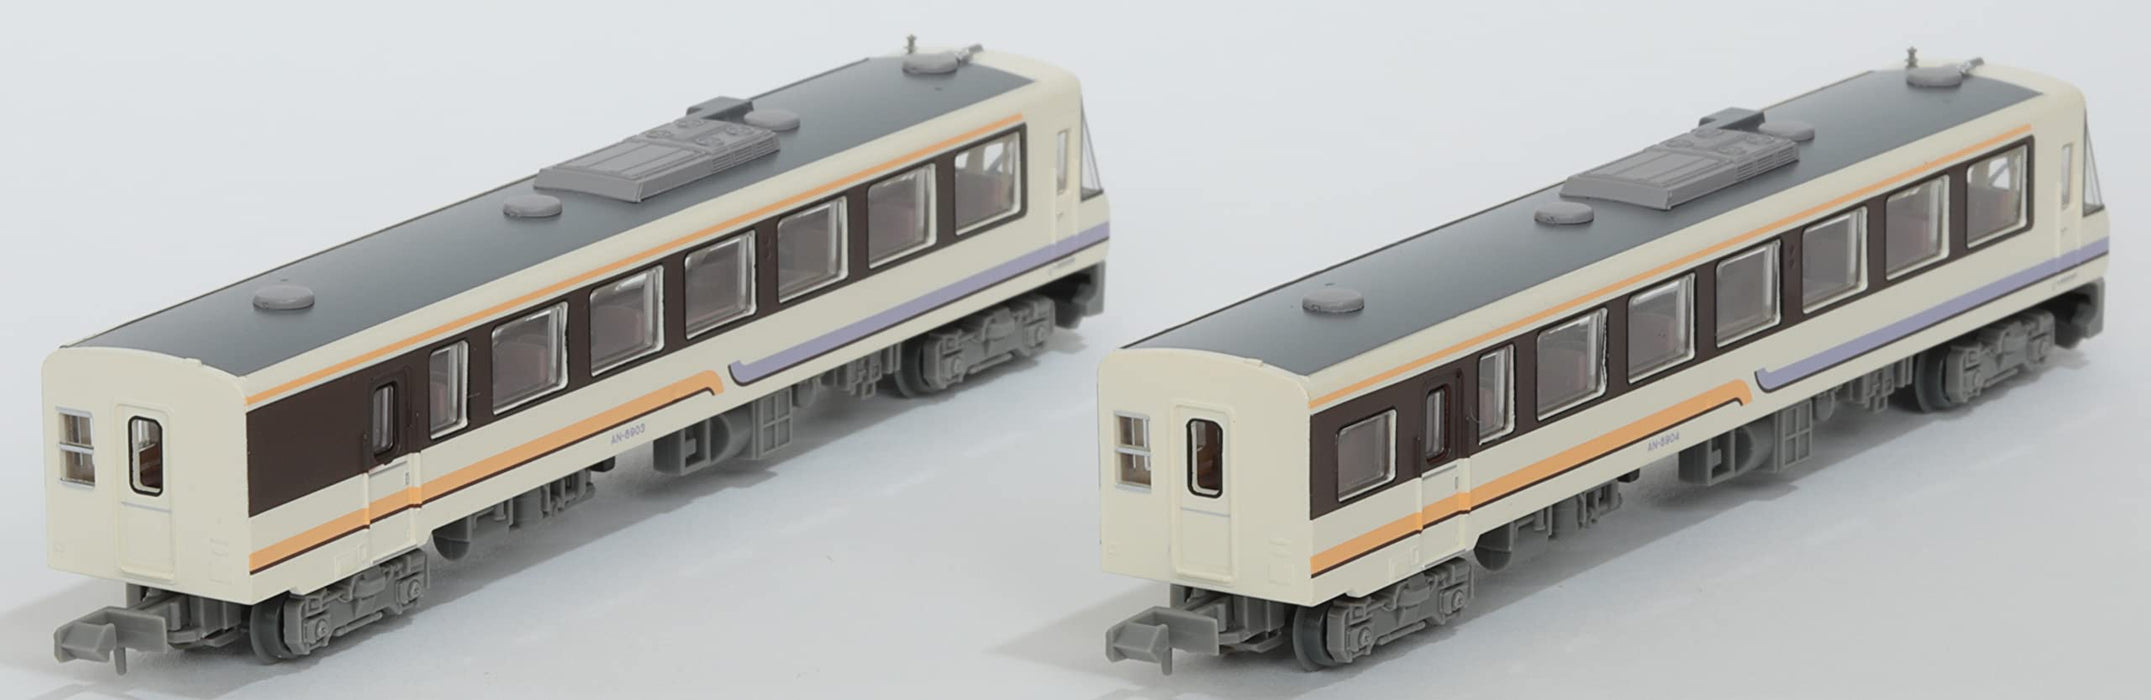 Tomytec Akita Nairiku Jukan Railway An8900 ensemble de 2 voitures fournitures de Diorama couleur originale